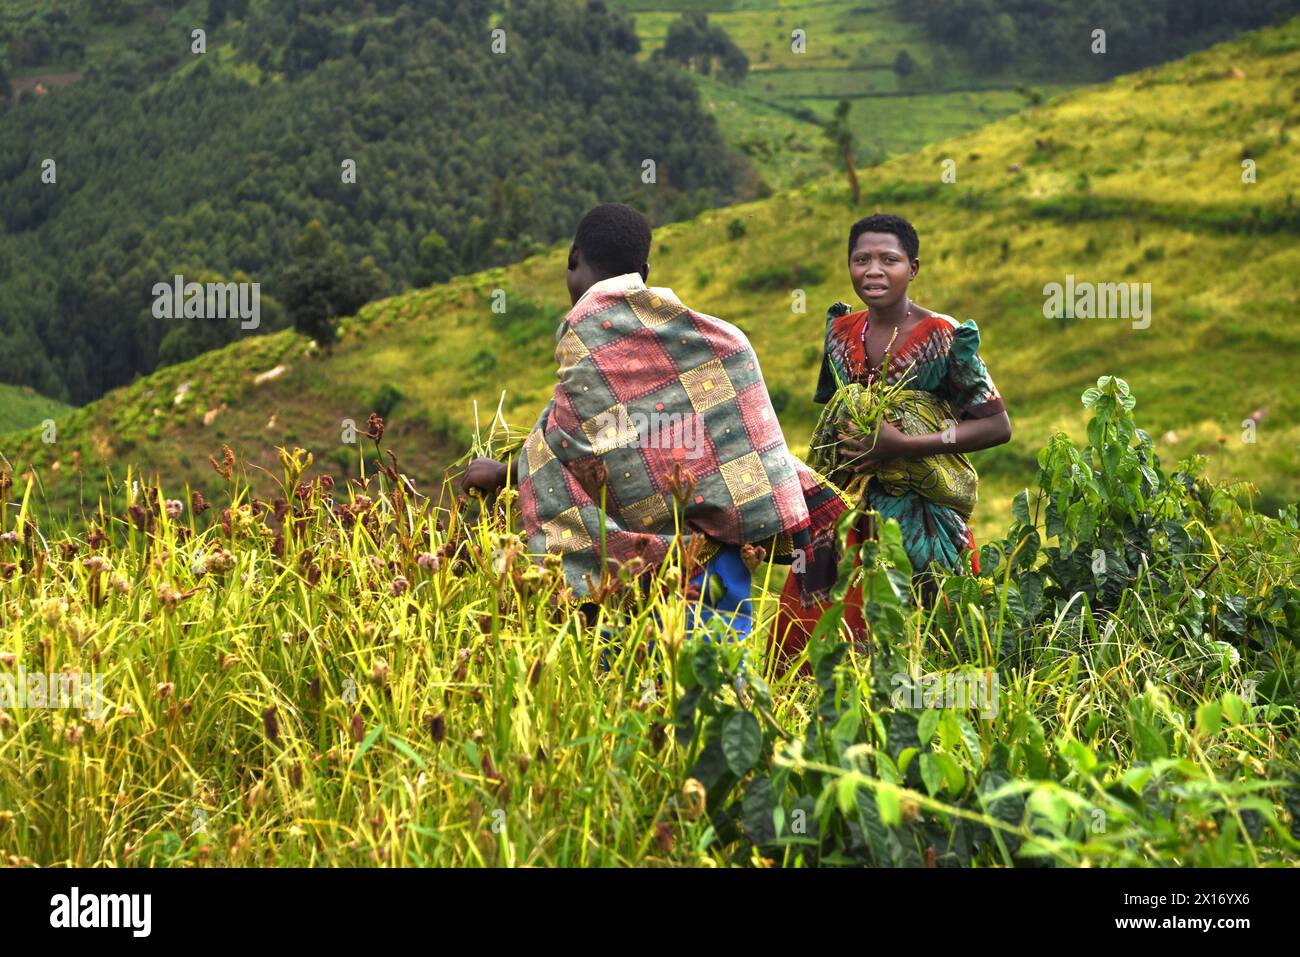 Tra i campi verdeggianti vicino al Parco Nazionale di Bwindi in Uganda, due donne ugandesi, adornate da vibranti abiti tradizionali, raccolgono diligentemente raccolti raccolti. Te Foto Stock